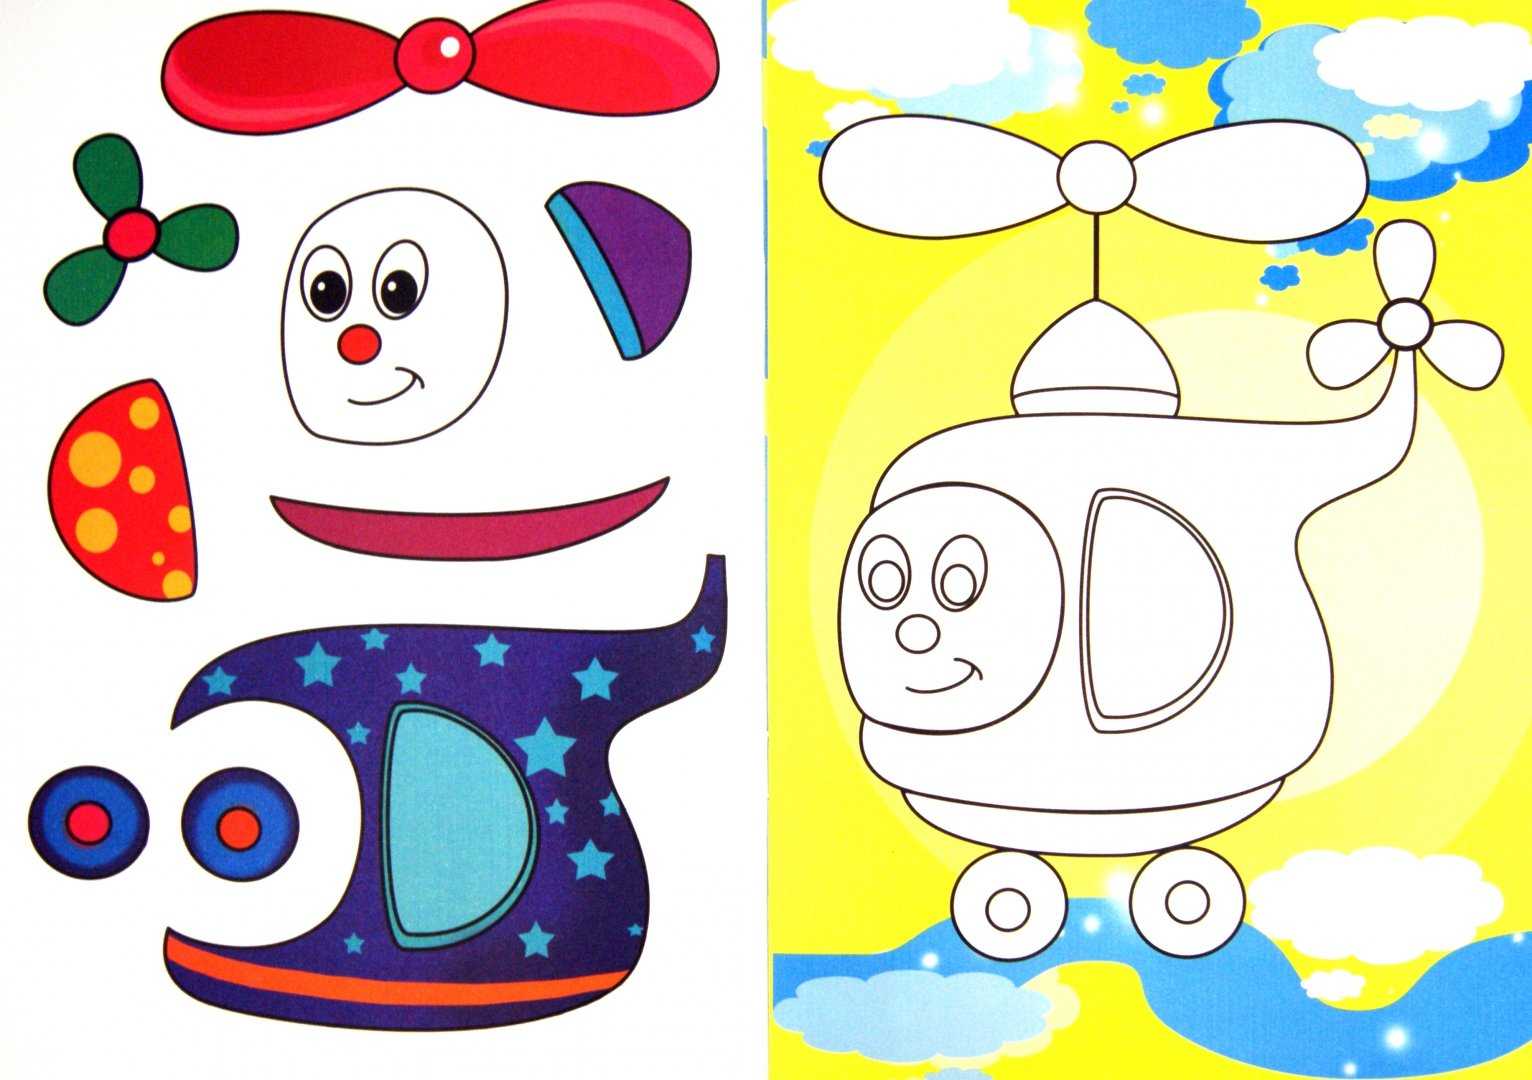 Аппликация для ребенка 3-4 лет: начало развития творческих способностей с аппликации из цветной бумаги